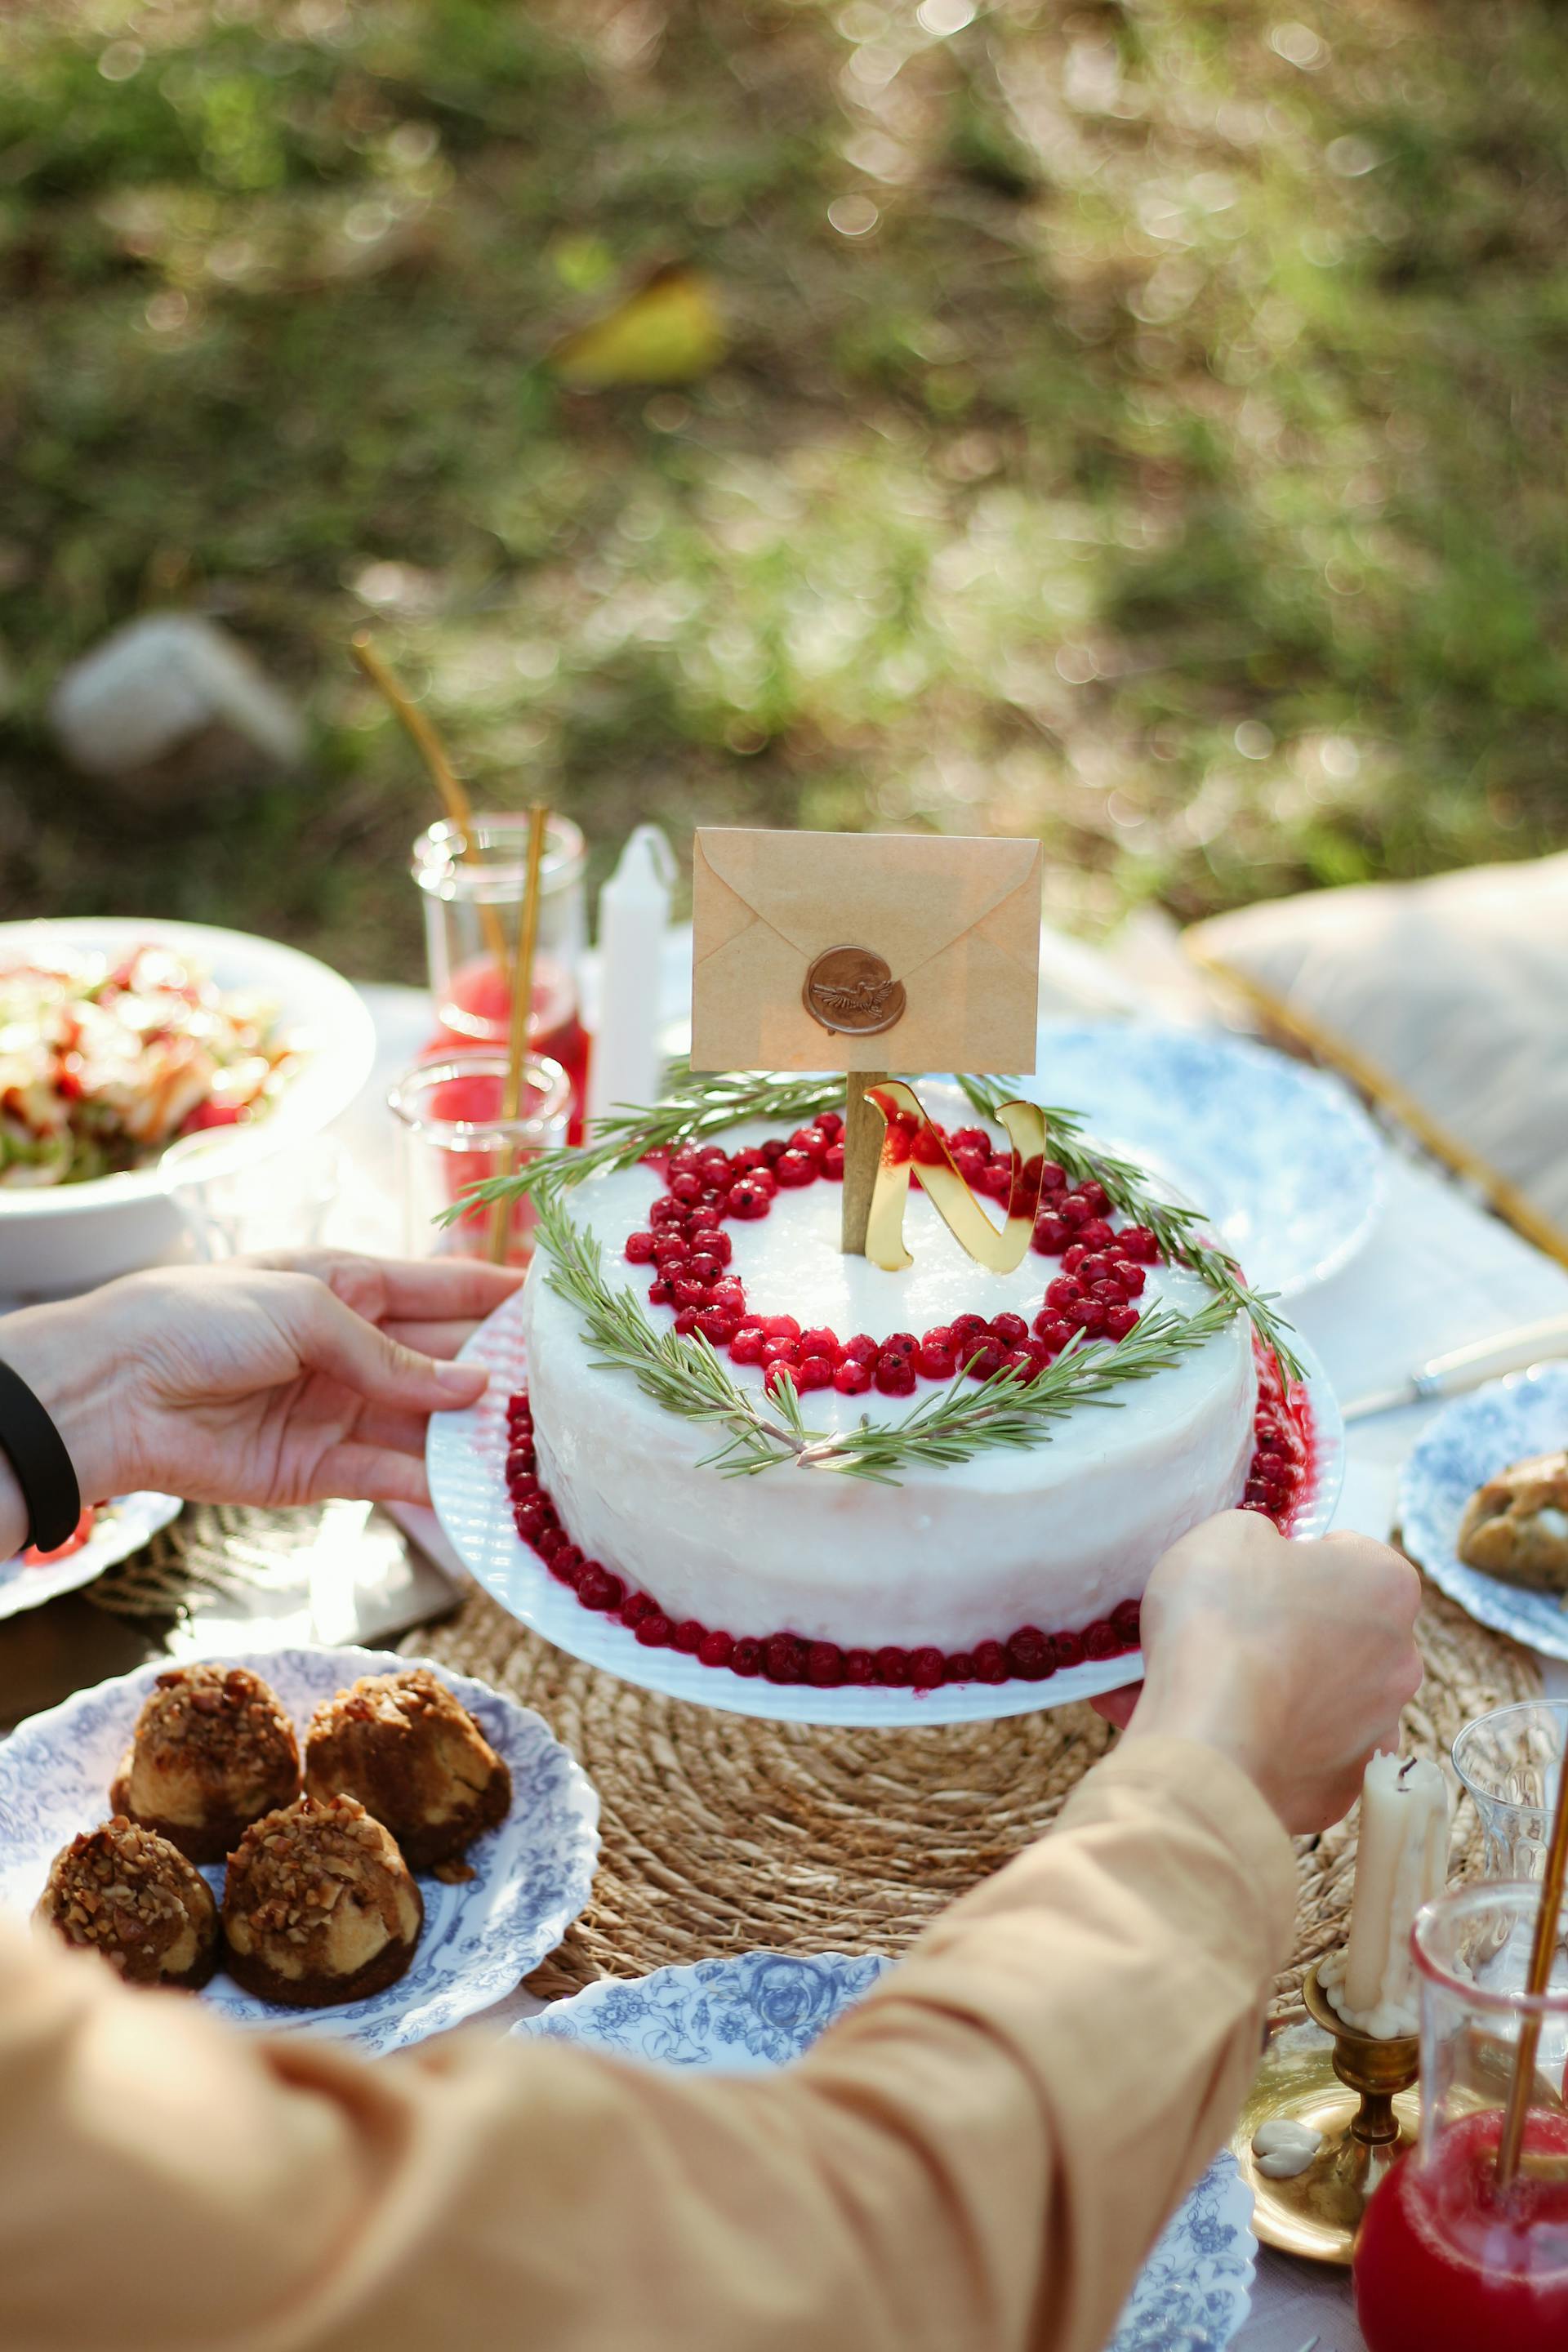 Une personne tenant un gâteau au-dessus d'une table de dîner | Source : Pexels